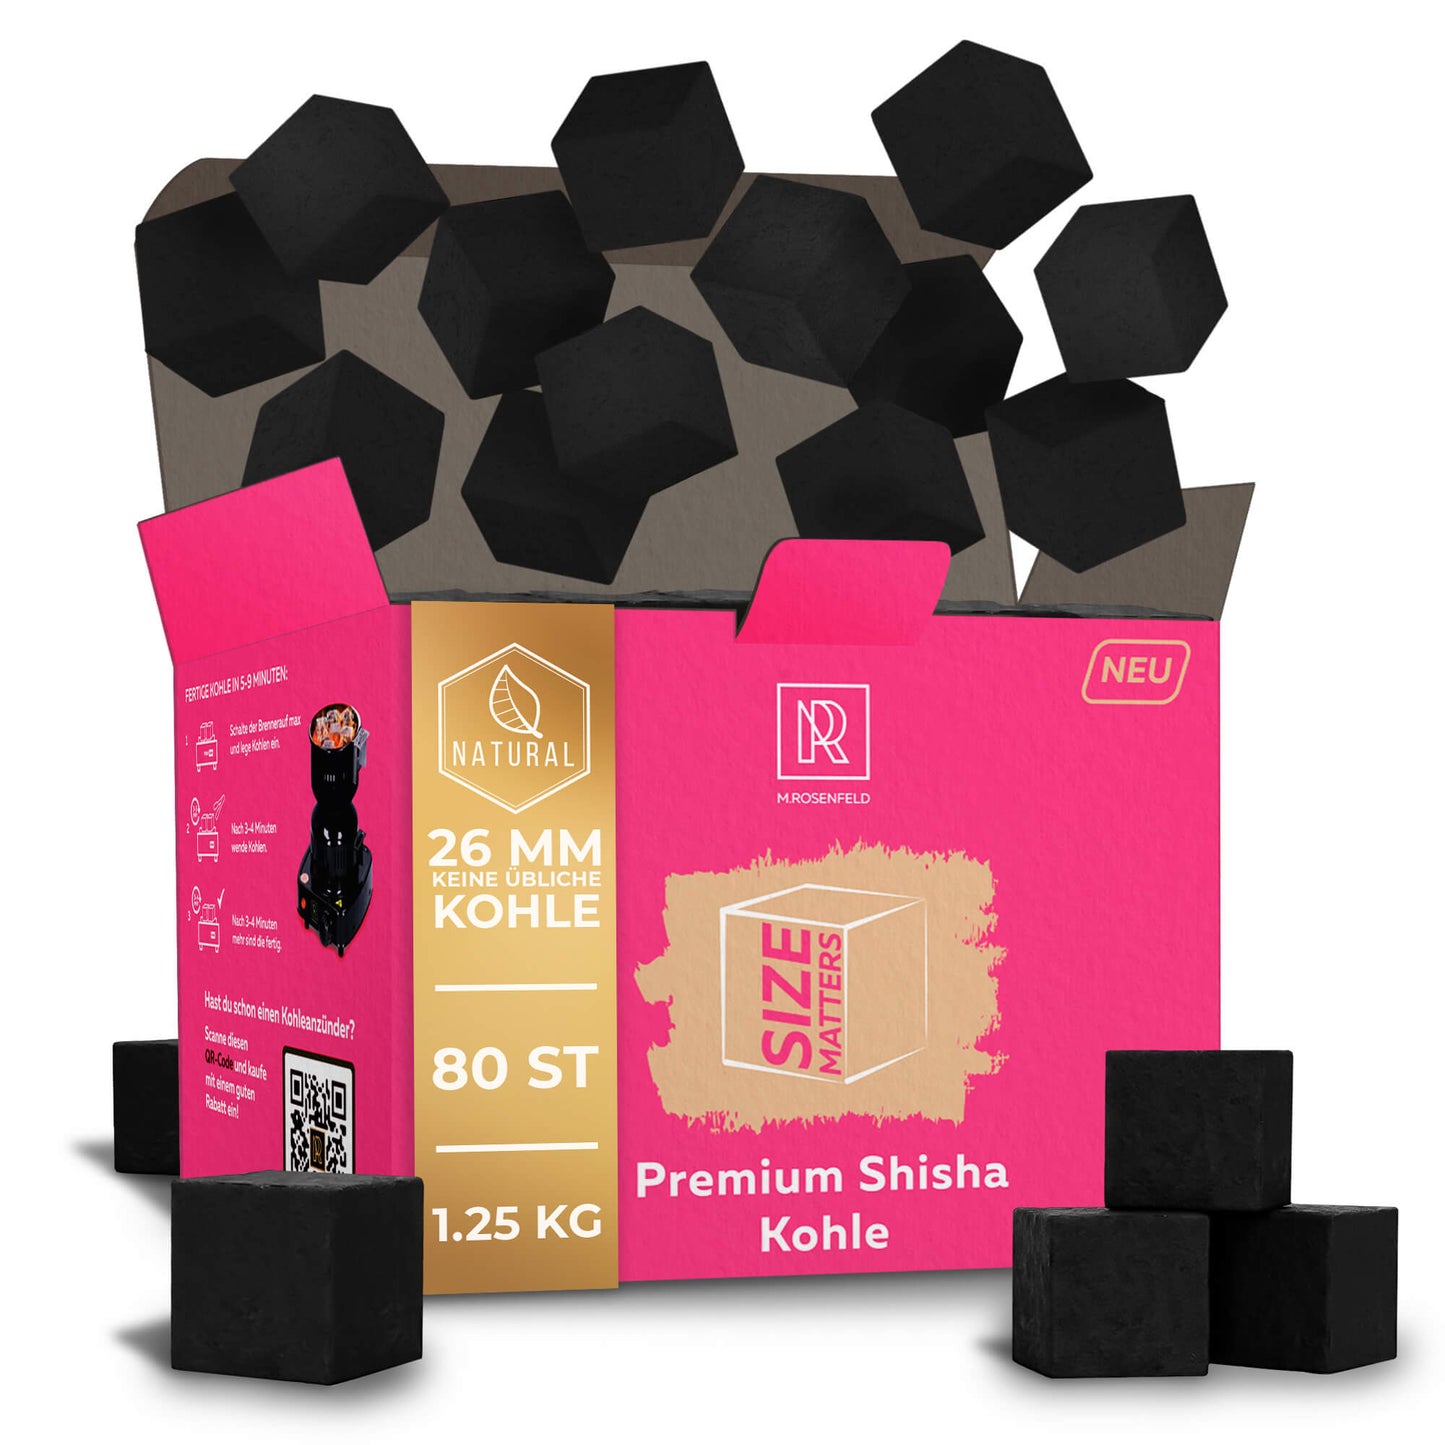 Premium-Shisha-Kohle-Kokosnuss–XL-Pack-1,25kg-26mm-80-Würfel-100%-natürliche-Kokos-Kohle-für-Shisha-im-Vorteilspack-Hochwertige-Kokos-Shishakohle-Lange-Brenndauer